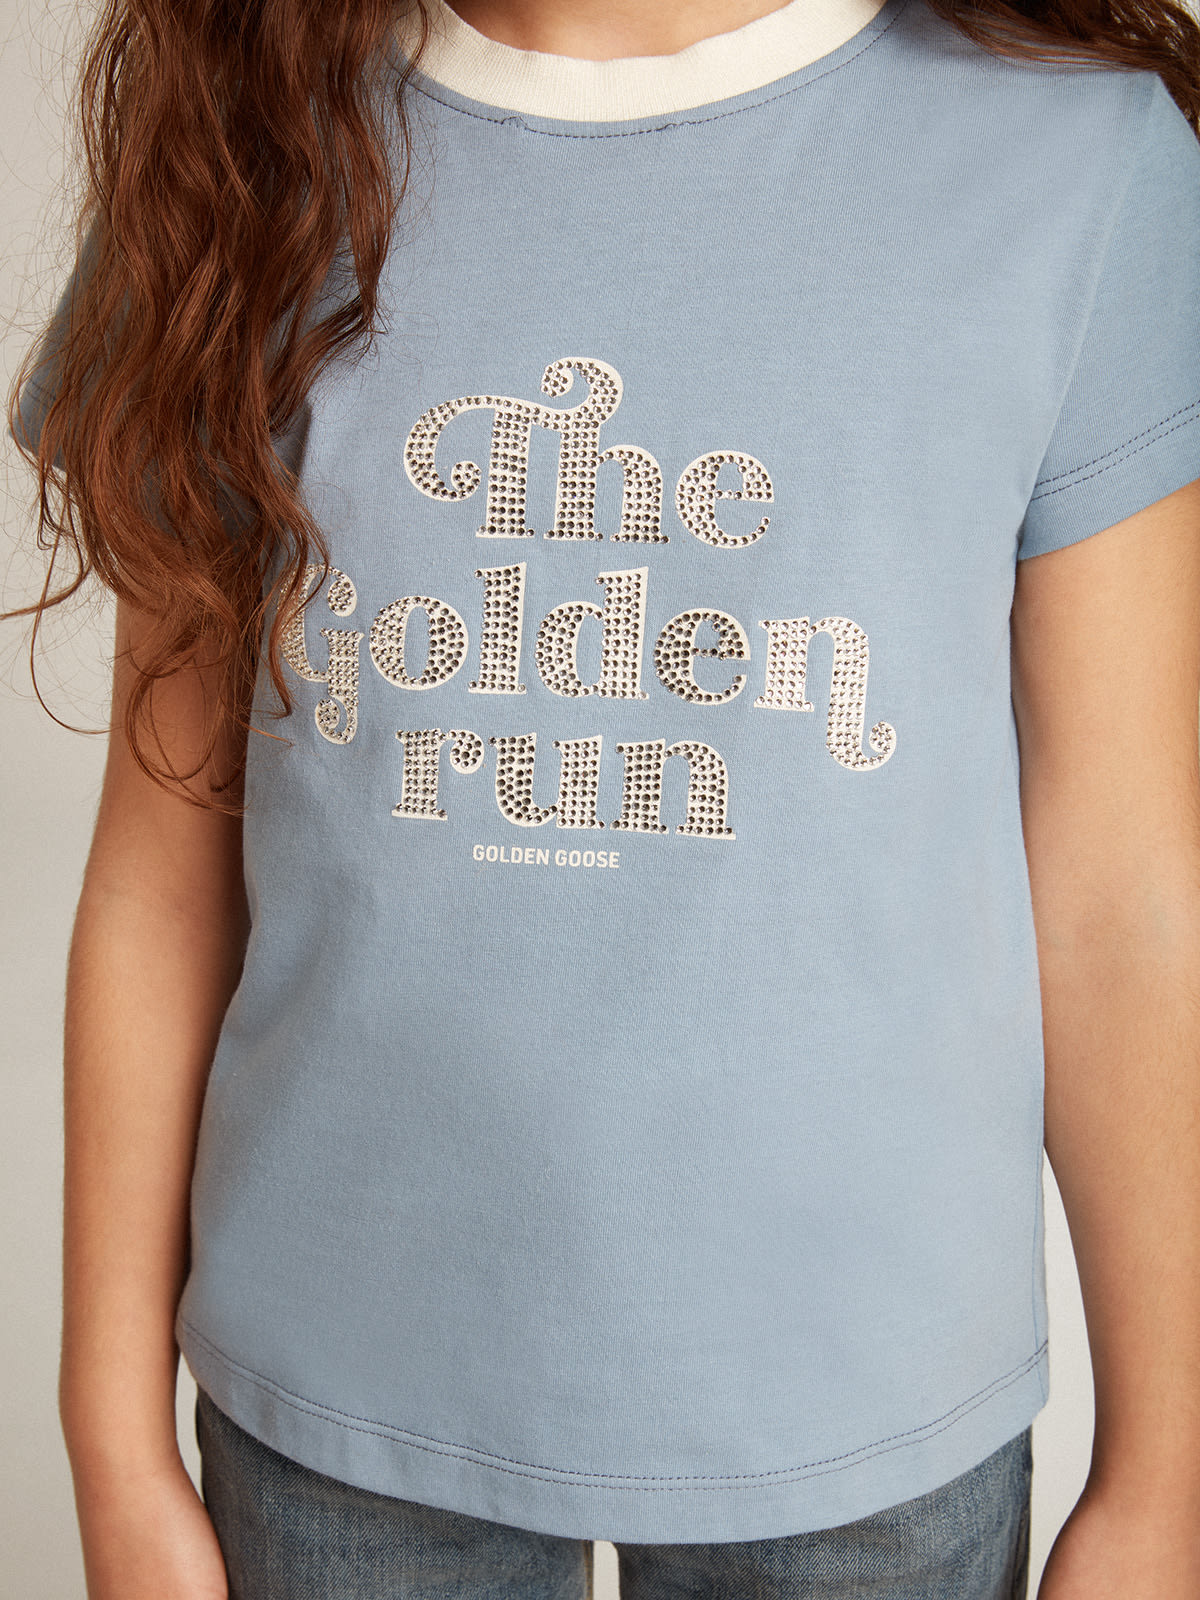 Golden Goose - T-shirt pour fille en coton bleu clair avec imprimé et cristaux in 